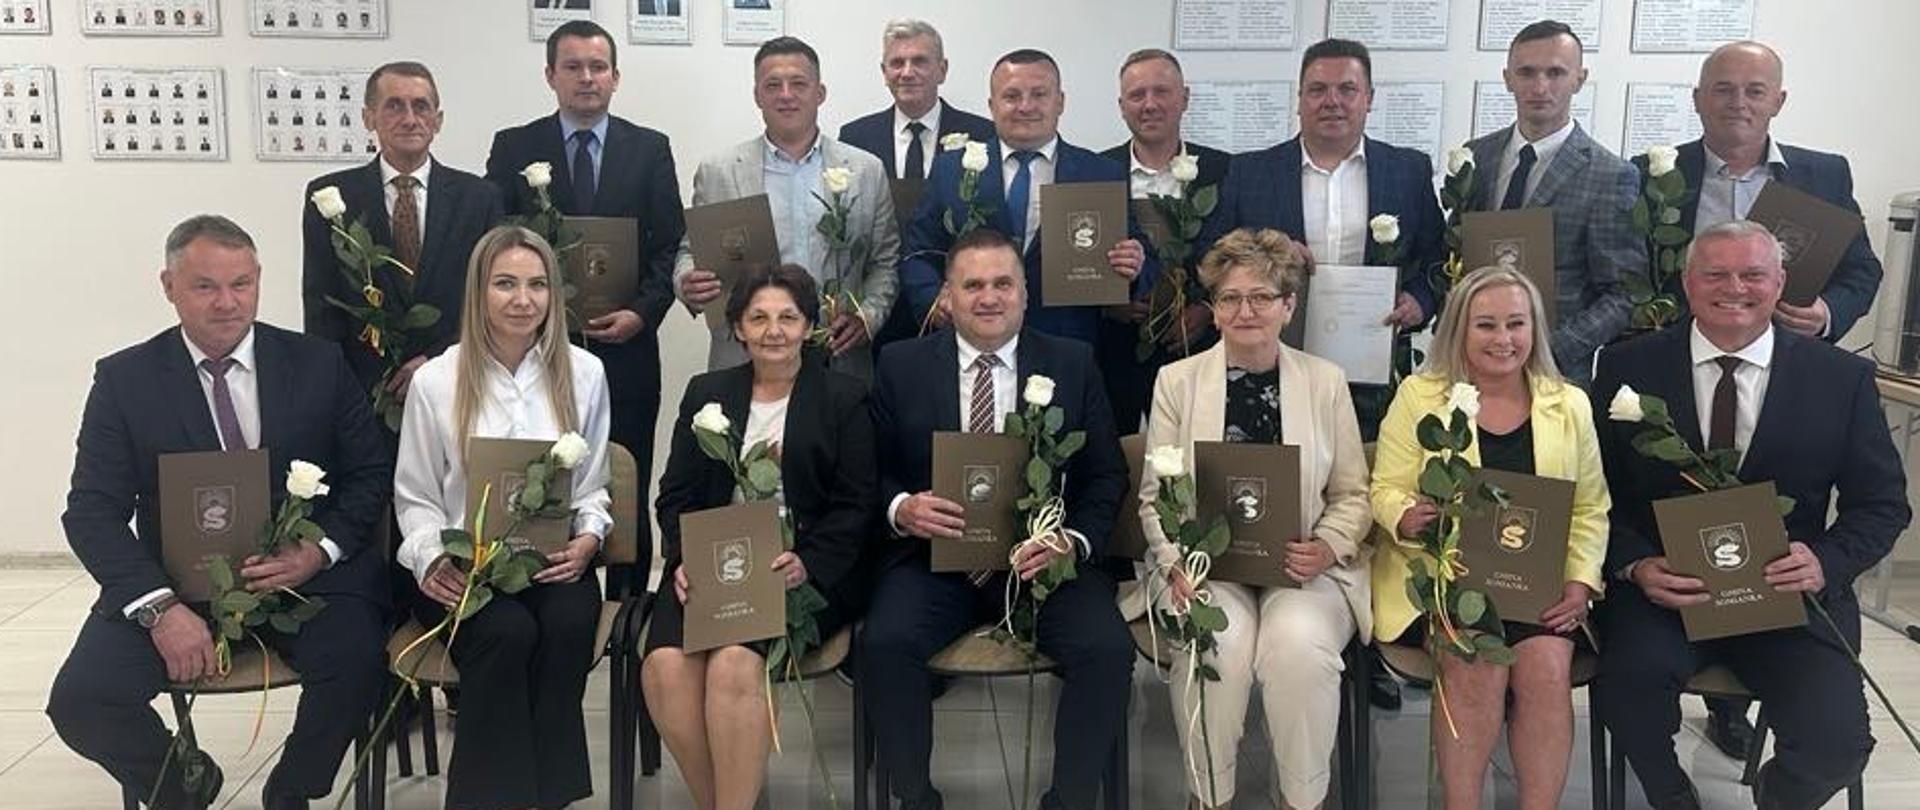 Na zdjęciu widać 15 nowy wybranych radnych gminy Somianka wraz z wójtem Panem Andrzejem Żołyńskim. 